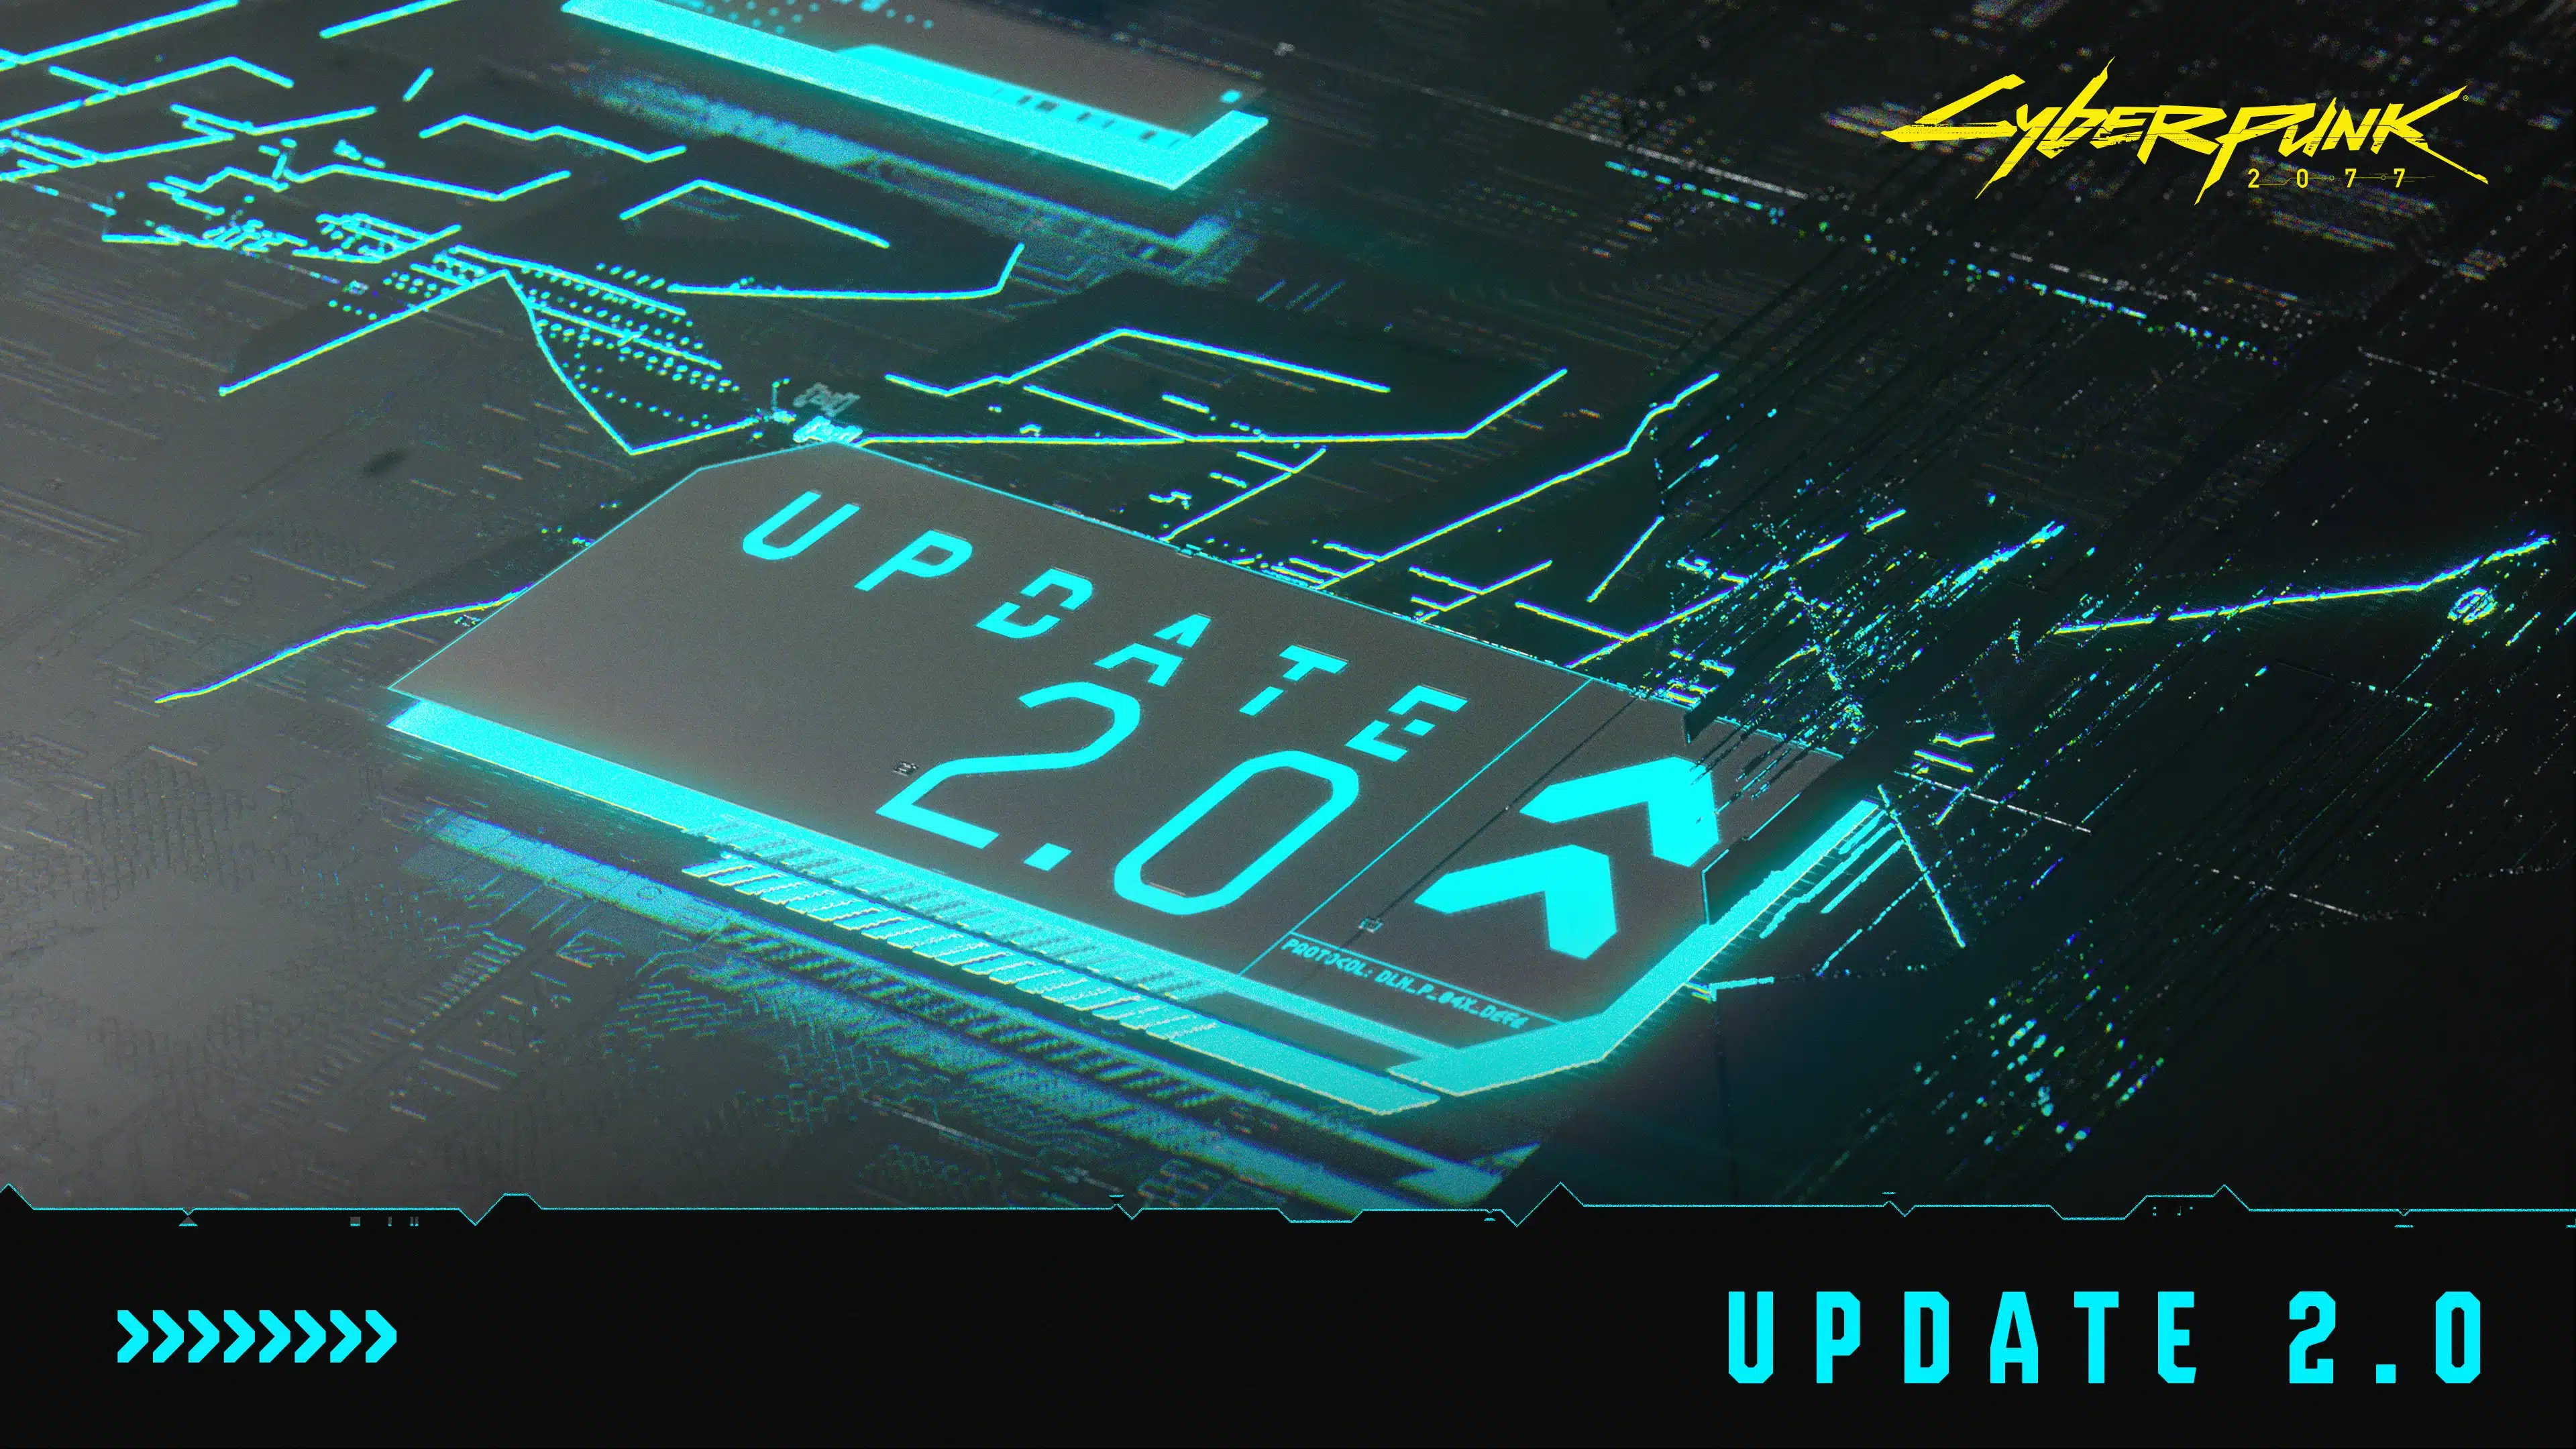 Cyberpunk 2077 Update 2.0 patch notes